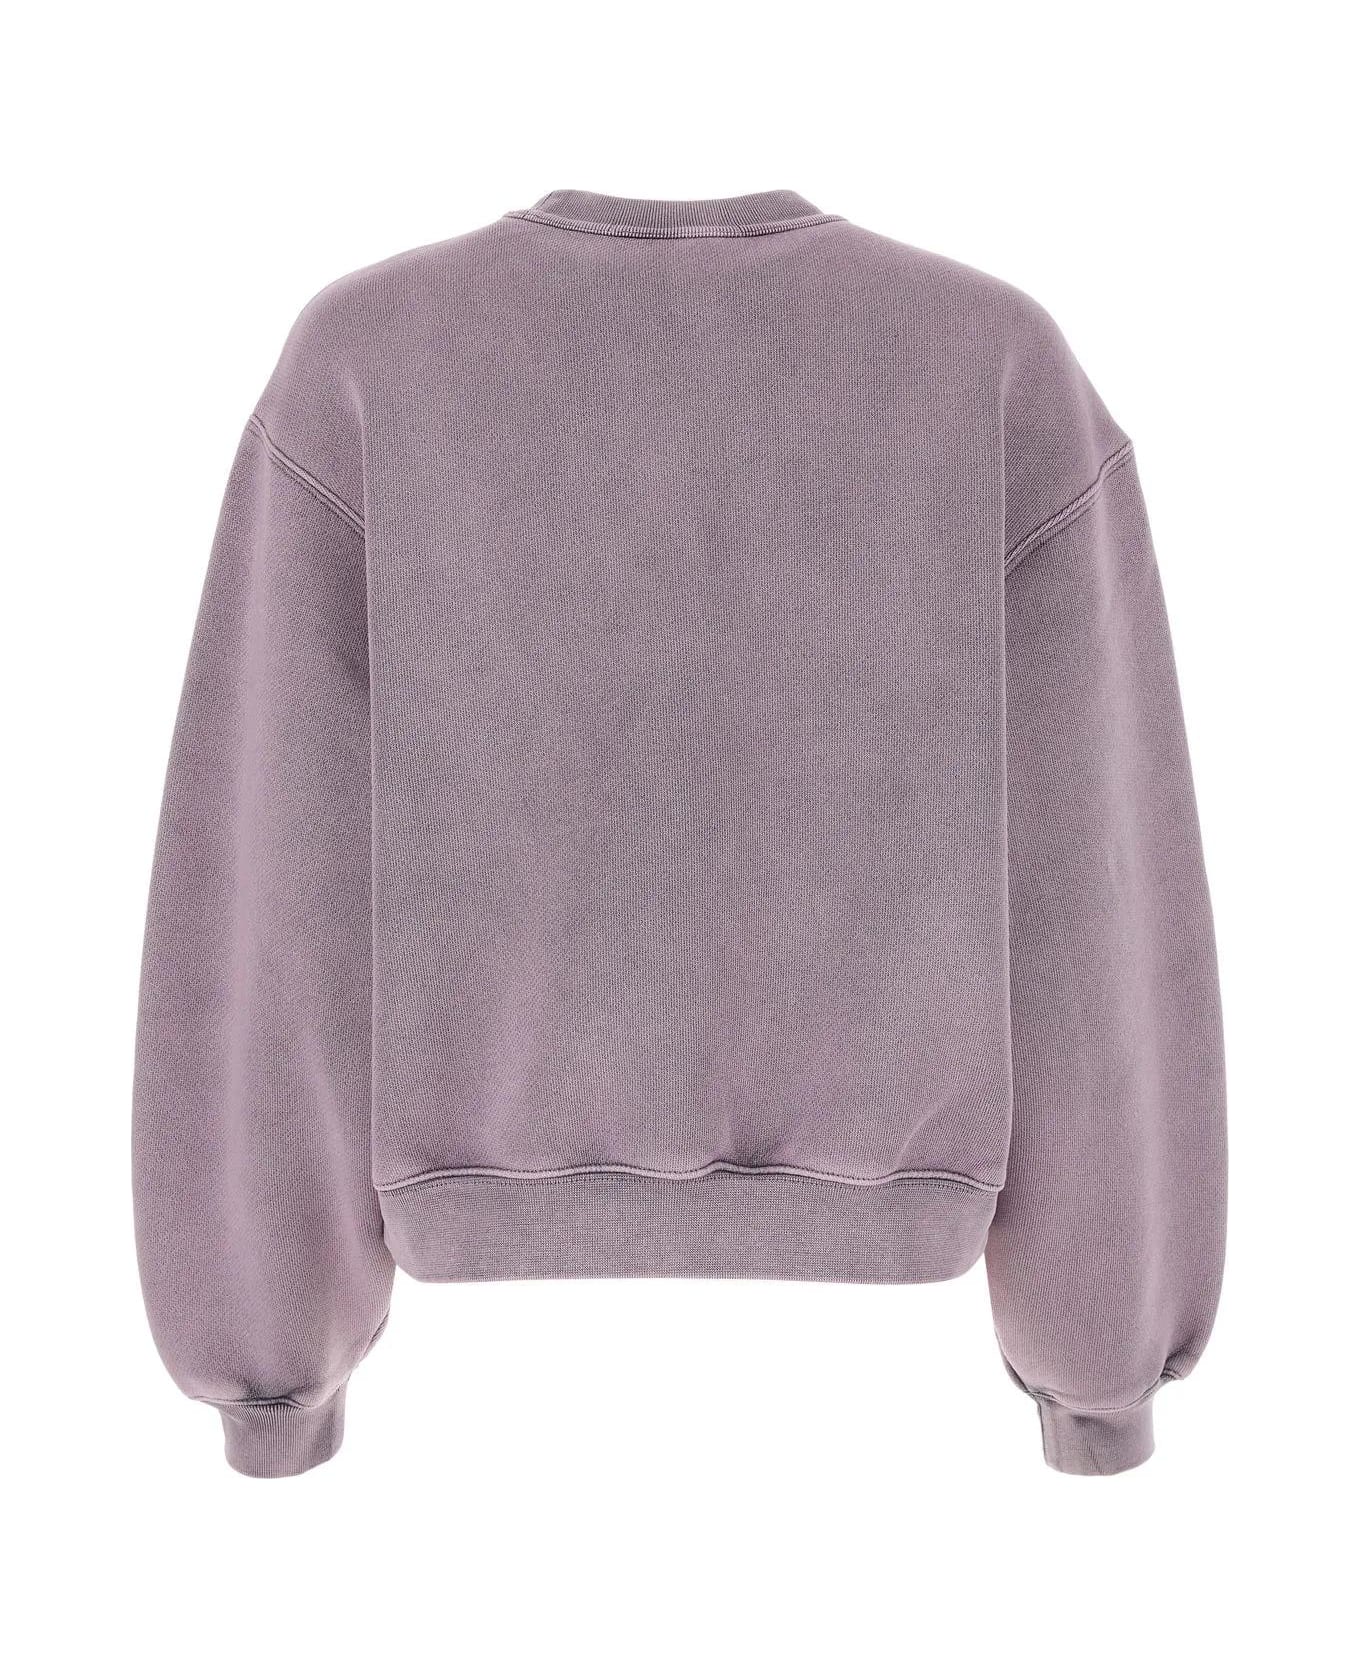 Alexander Wang Pink Cotton Blend Sweatshirt - A Acid Pink